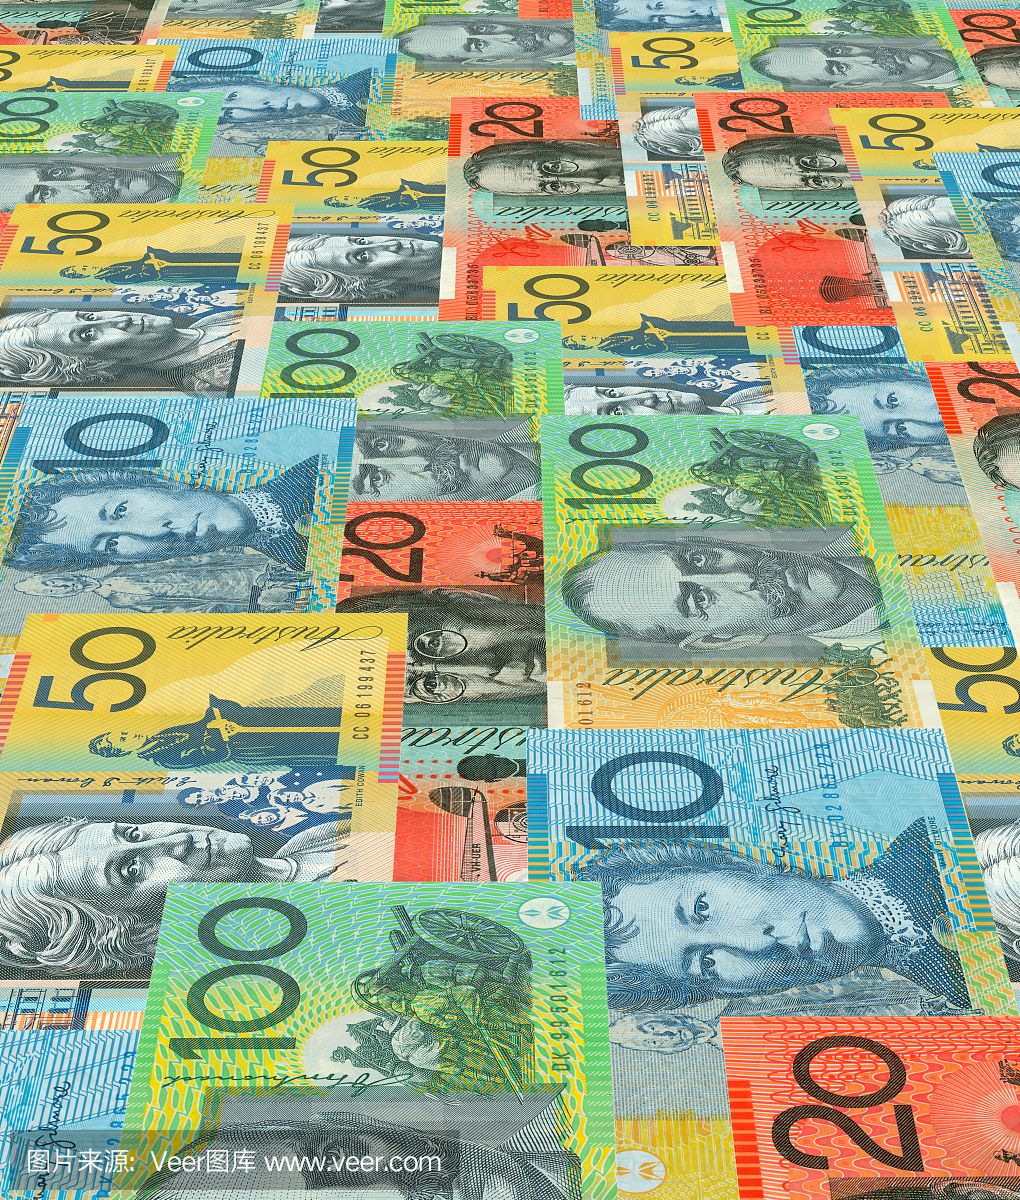 澳大利亚货币,澳元,澳币,澳大利亚钱